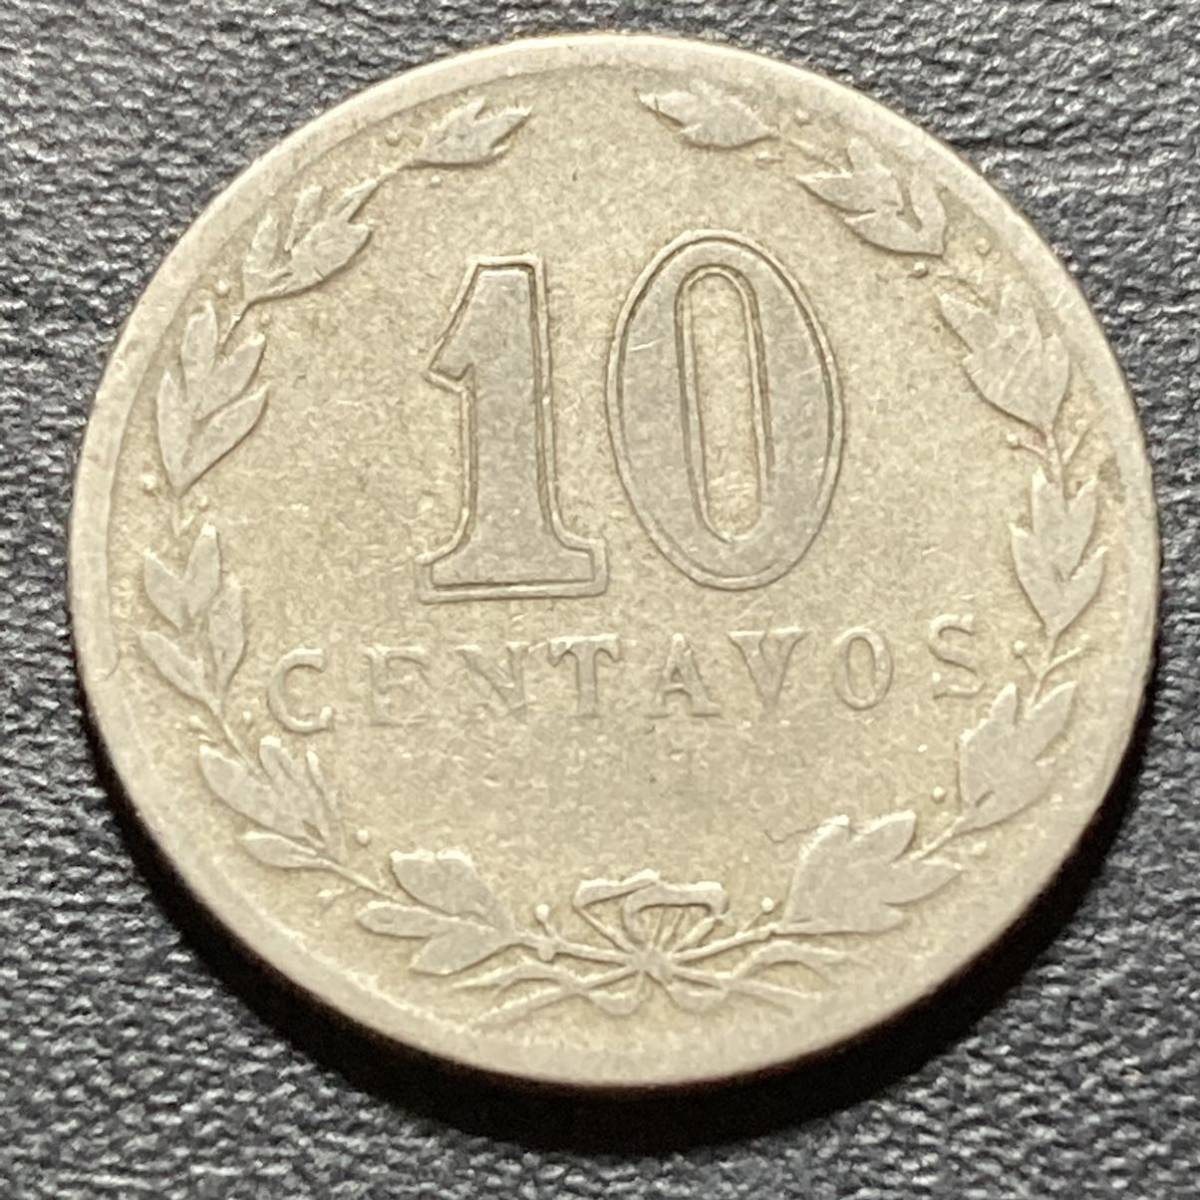 【p109】古銭外国銭 アルゼンチン 古い10センタボスコイン 1937年(^^)_画像2